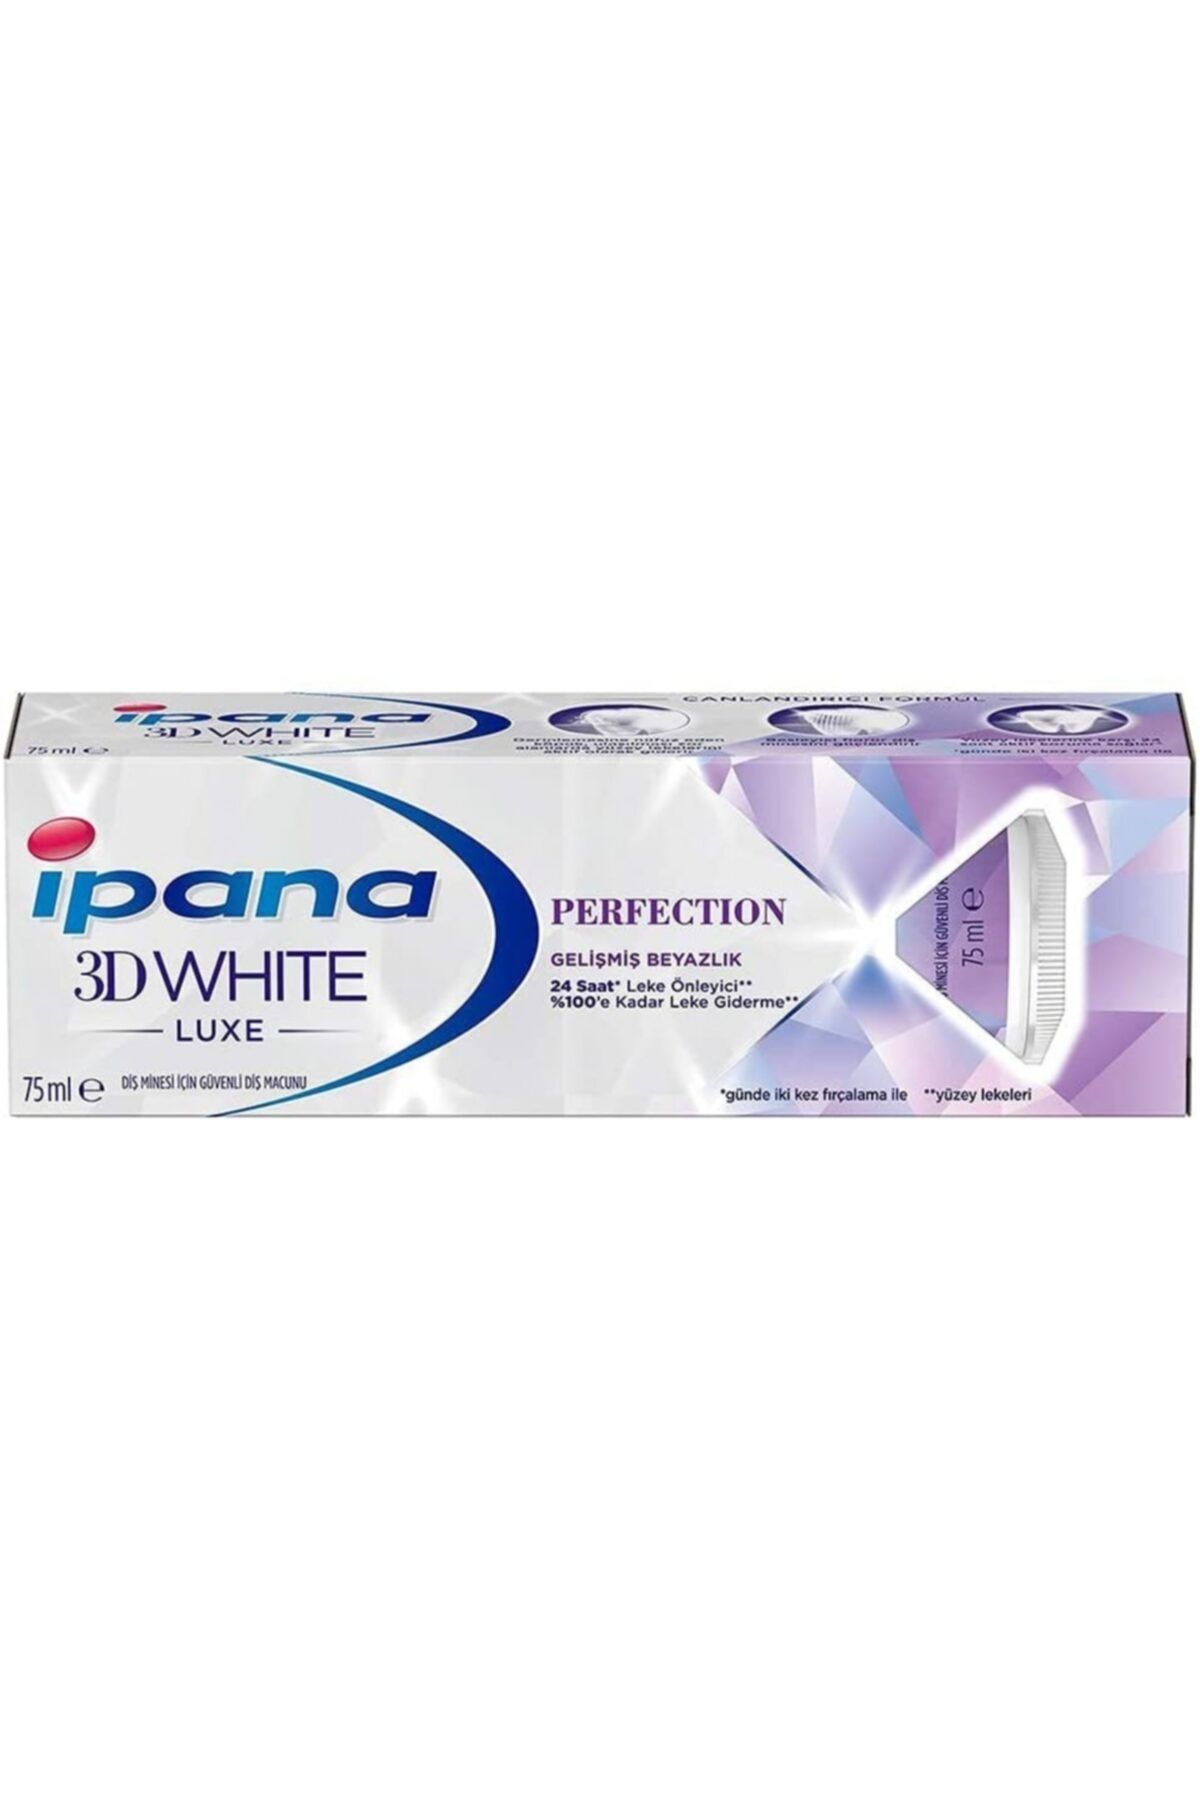 İpana Marka: Ipana 3 Boyutlu Beyazlık Luxe Diş Macunu Perfection Gelişmiş Beyazlık 75 Ml Kategori: Diş M